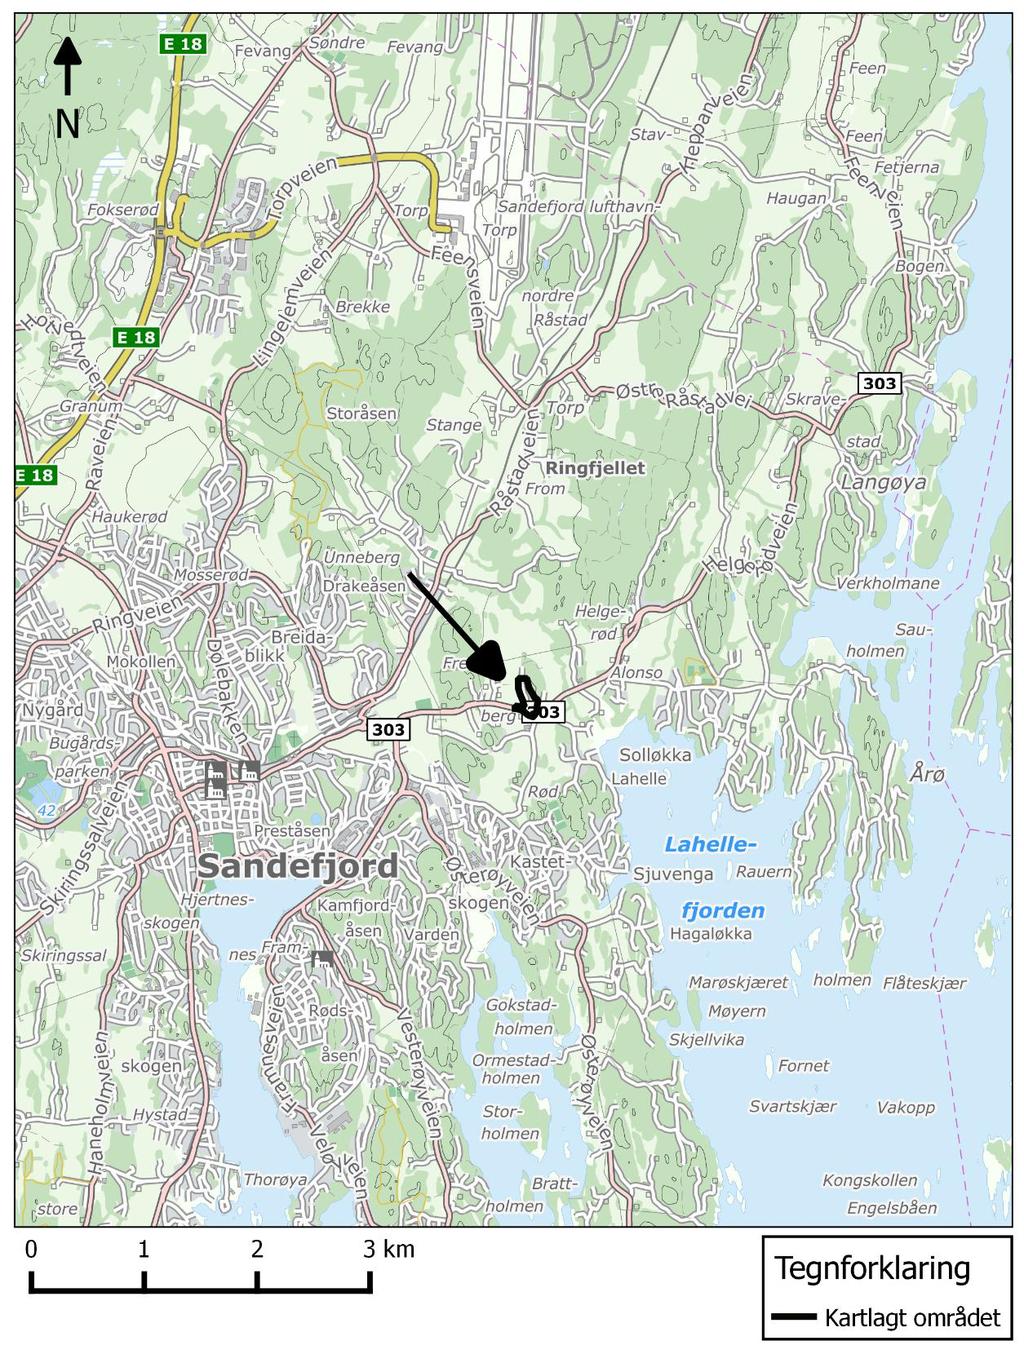 1 Innledning 1.1 Bakgrunn Oppdragsgiver planlegger utvikling av 8 boligtomter på vestsiden av kollen Dronninga, Sandefjord kommune.